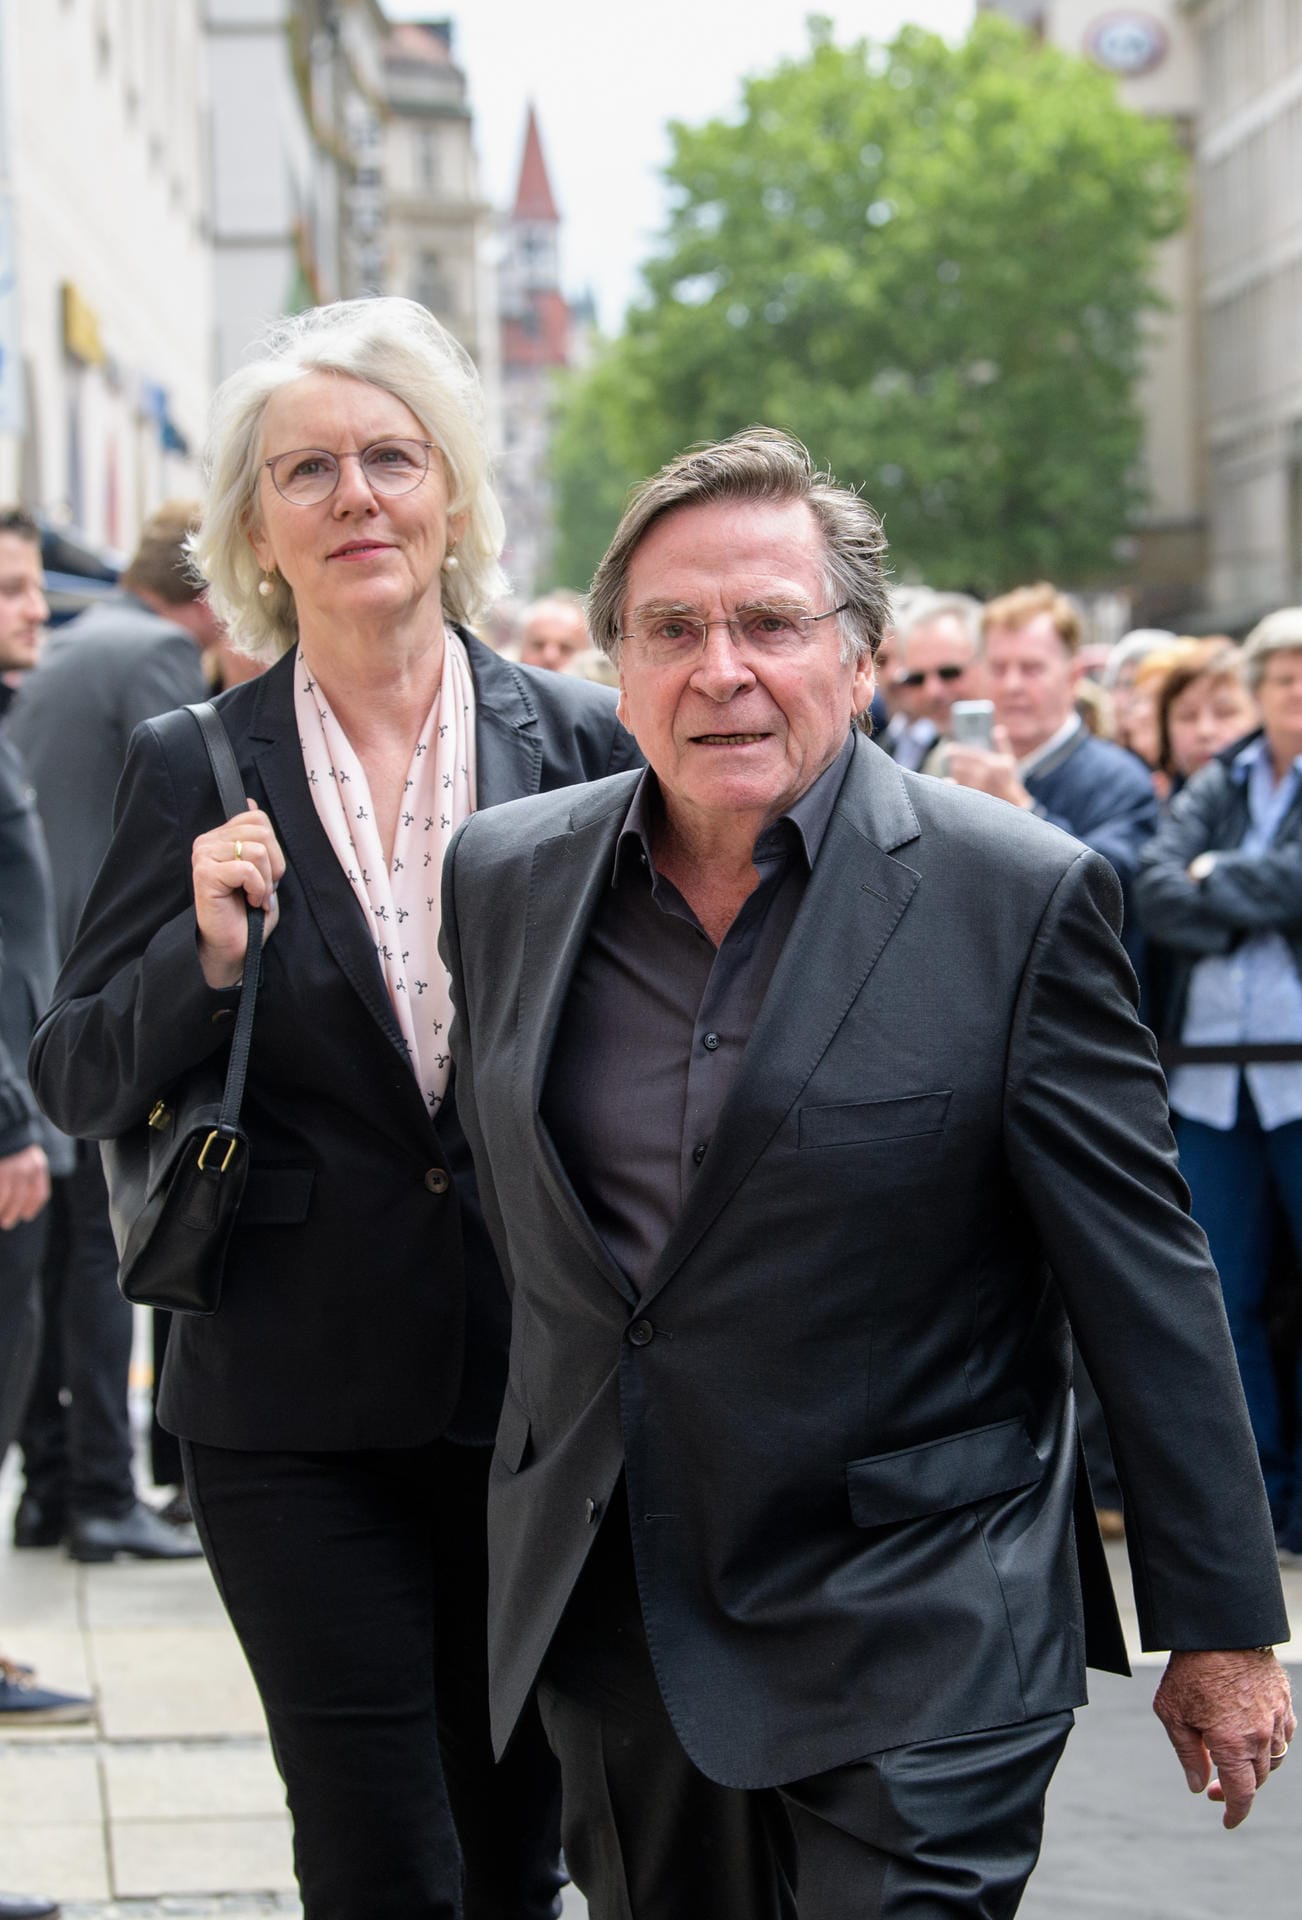 Schauspieler Elmar Wepper kam mit seiner Frau Anita zur Trauerfeier in München.